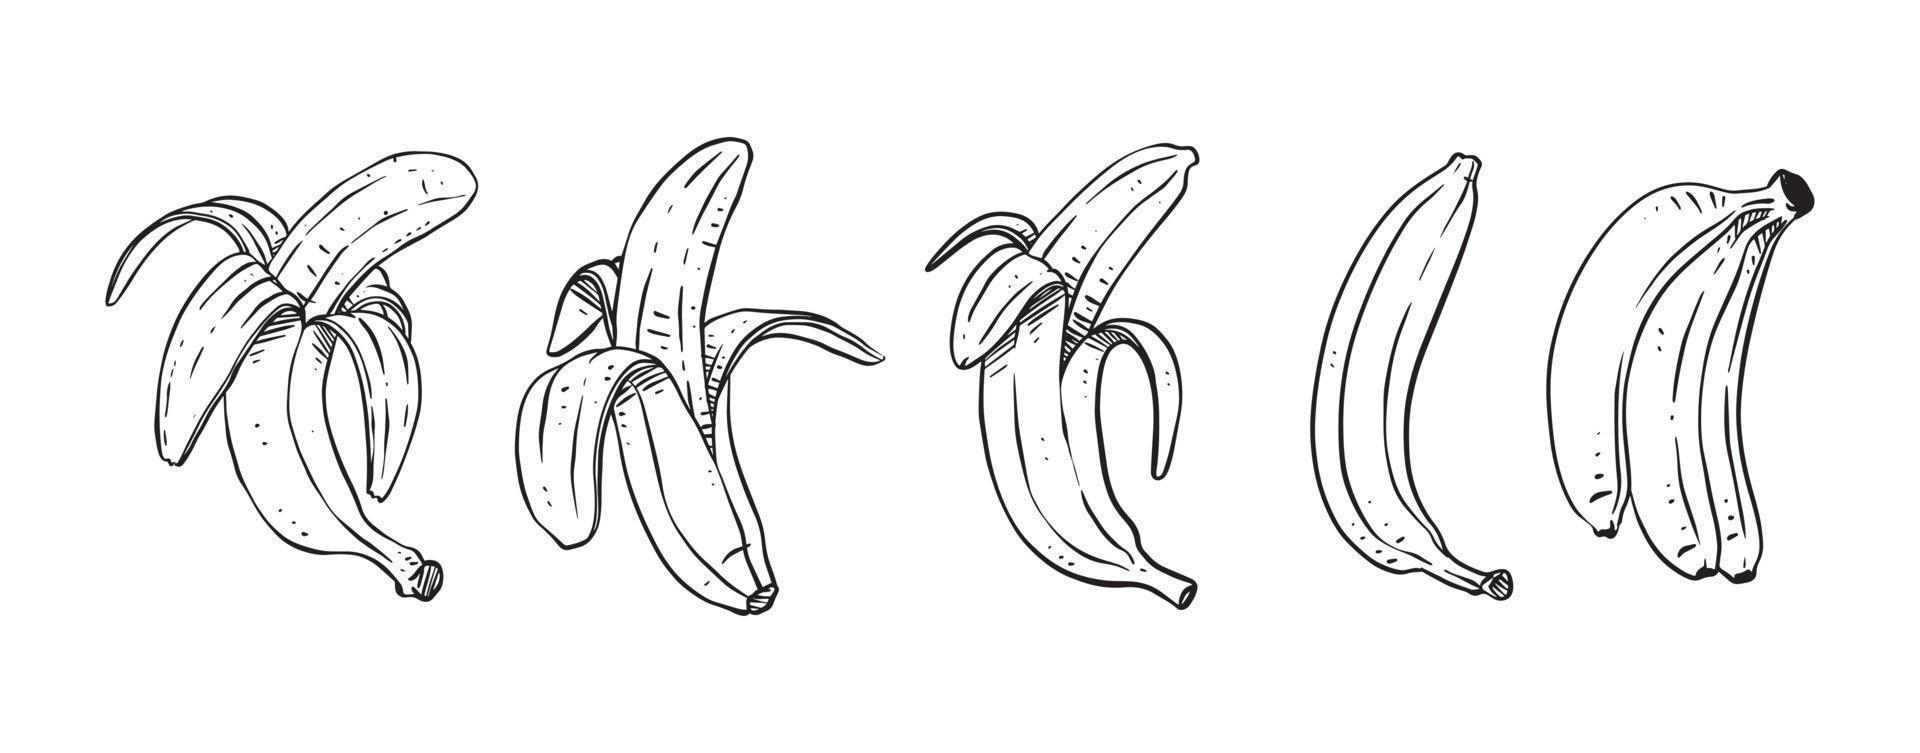 set di banane sbucciate, illustrazione vettoriale disegnata a mano